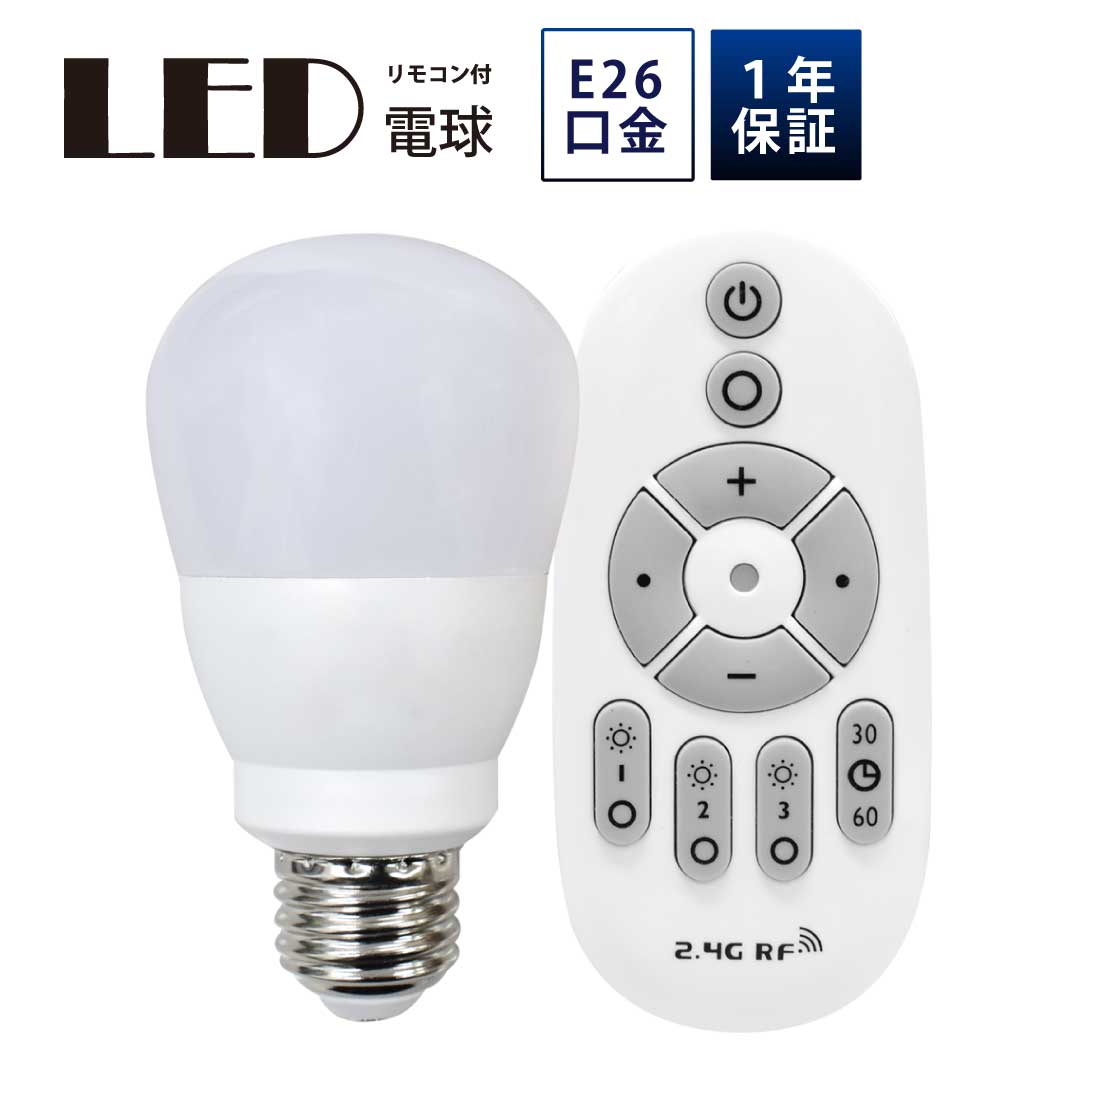 LED電球 50W形相当 E26 口金 リモコン付き 調色 調光 9W 一般電球 照明 節電 電球 電球色 昼白色 昼光色 700lm 3000k 6500k 工事不要 簡単設置 ペンダントライト